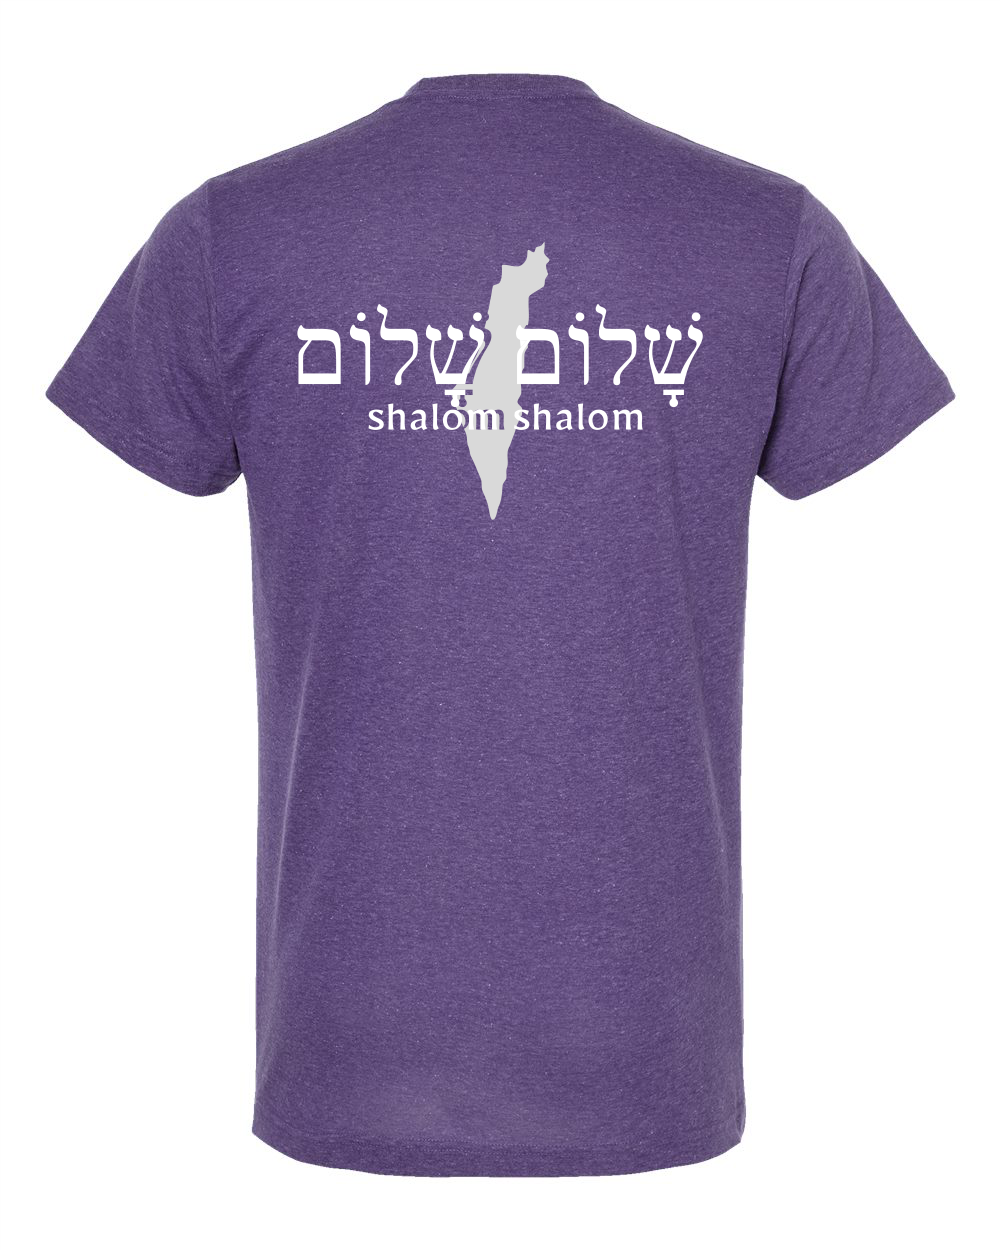 Shalom - Israel T-shirt